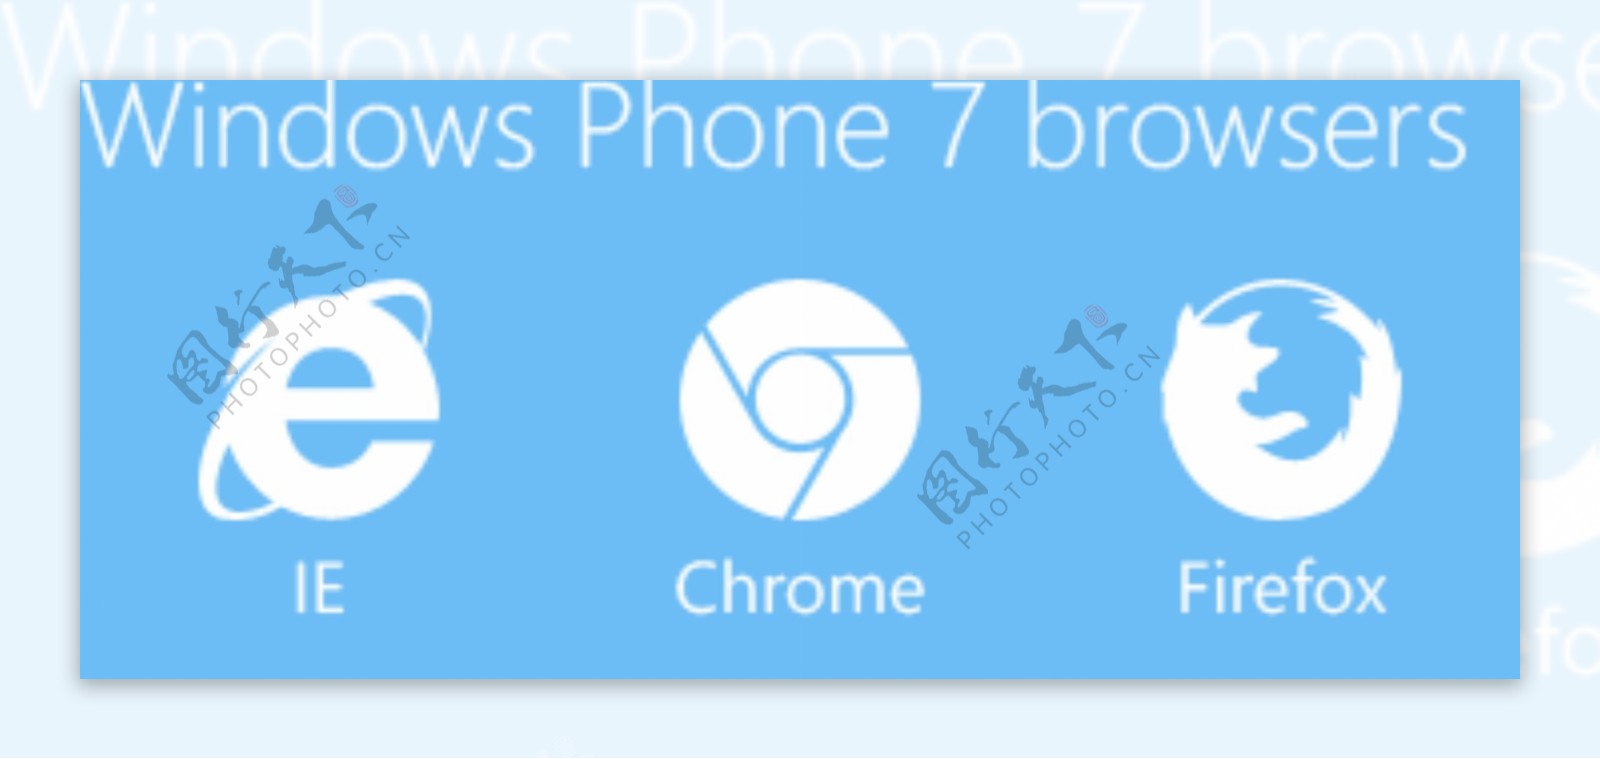 WindowsPhone7WP7浏览器的图标集PSD